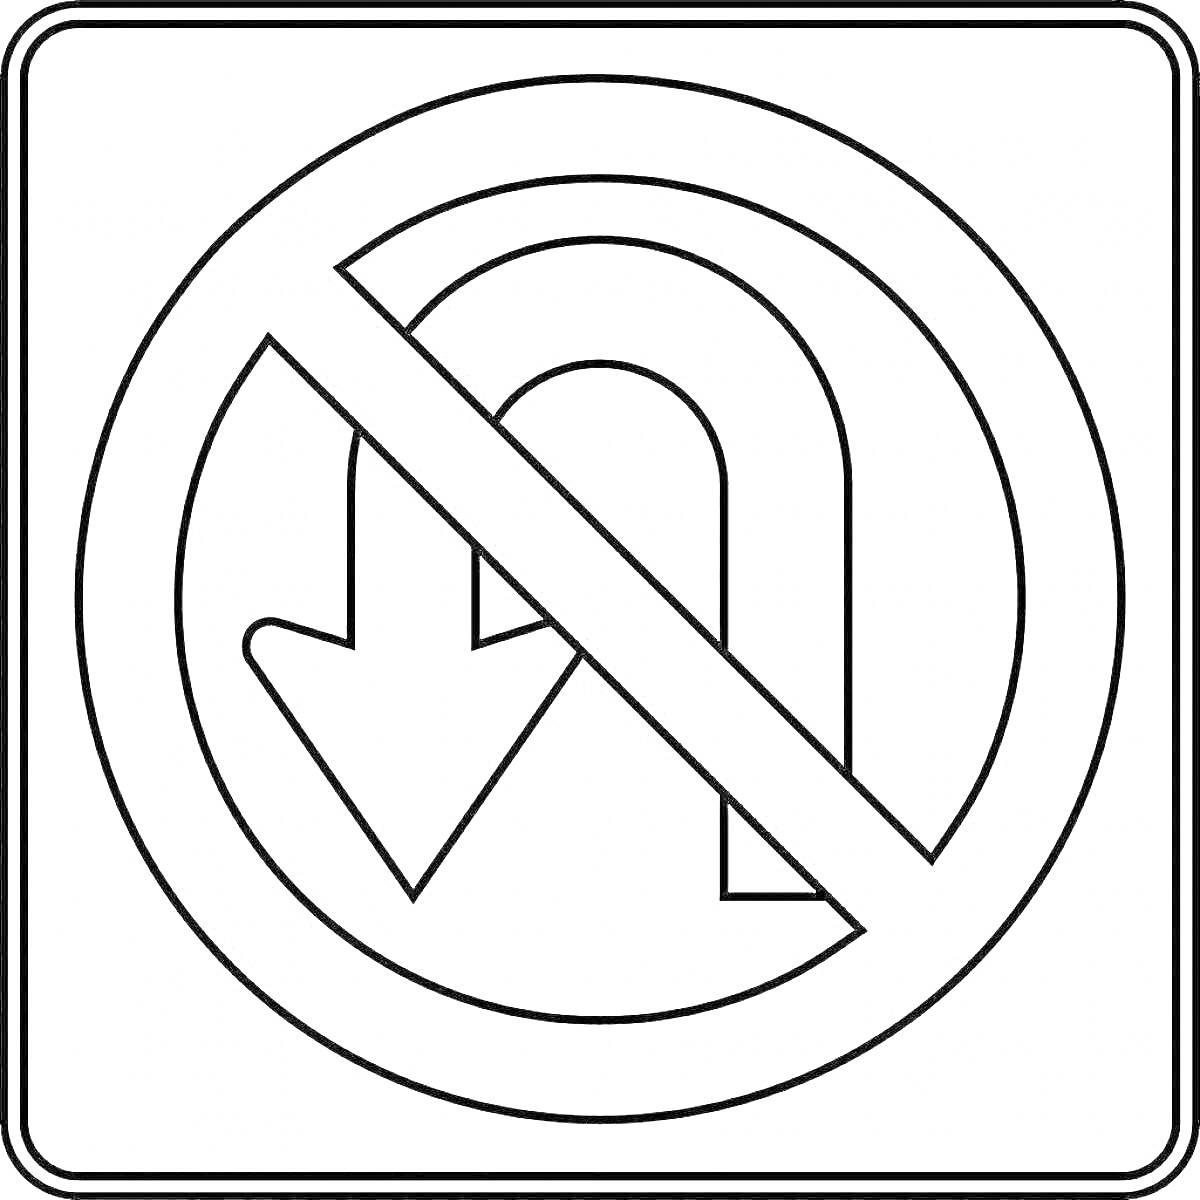 запрещающий знак «разворот запрещен» с перечеркнутой стрелкой, направленной вниз и затем обратно вверх